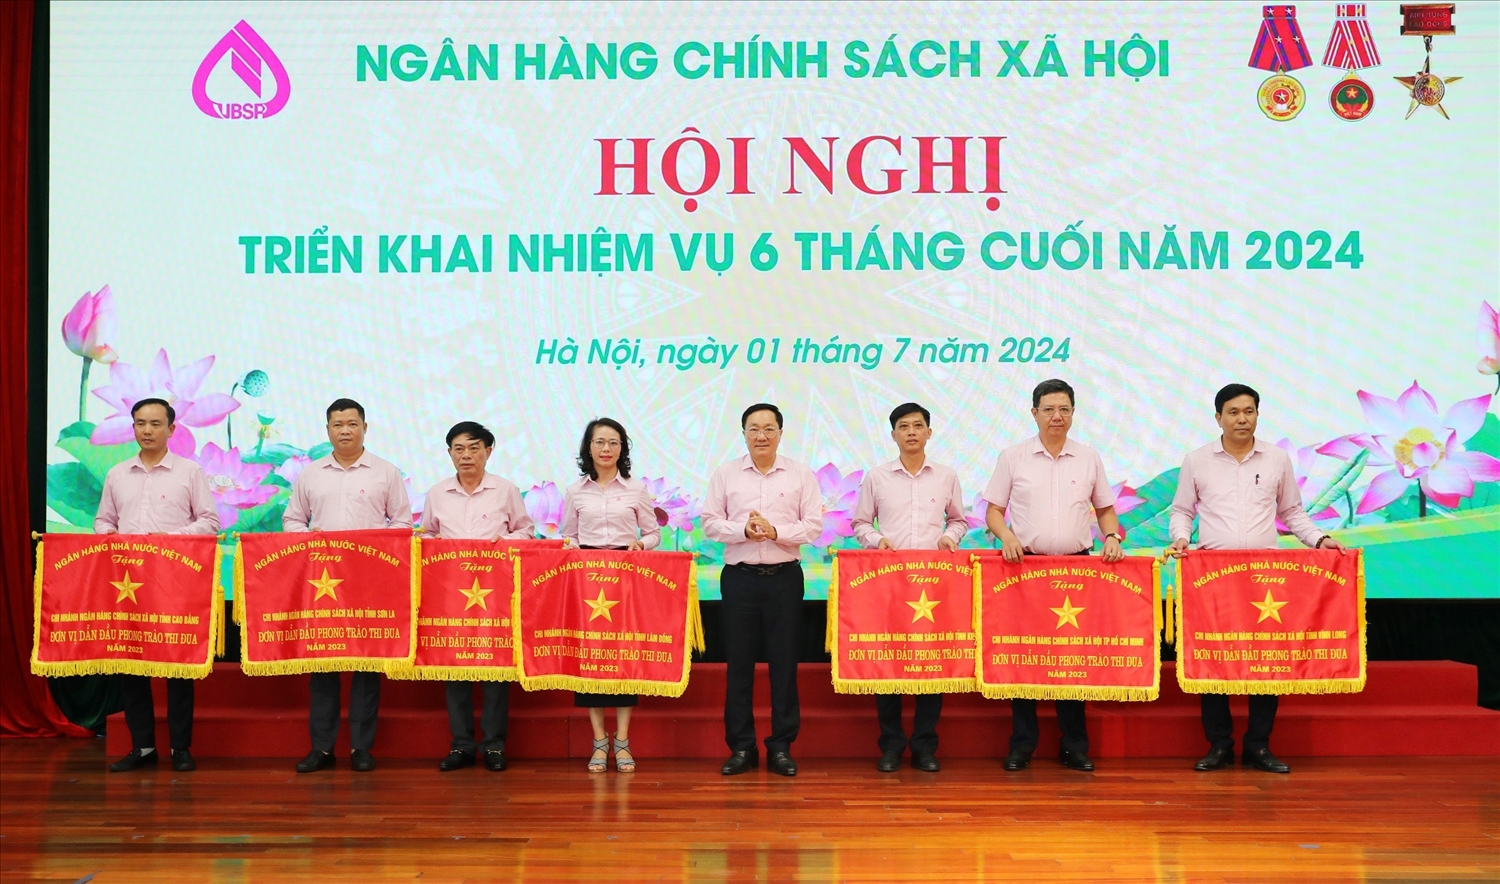 Tổng Giám đốc NHCSXH Dương Quyết Thắng chúc mừng 7 tập thể vinh dự được nhận Cờ thi đua của Ngân hàng Nhà nước năm 2023